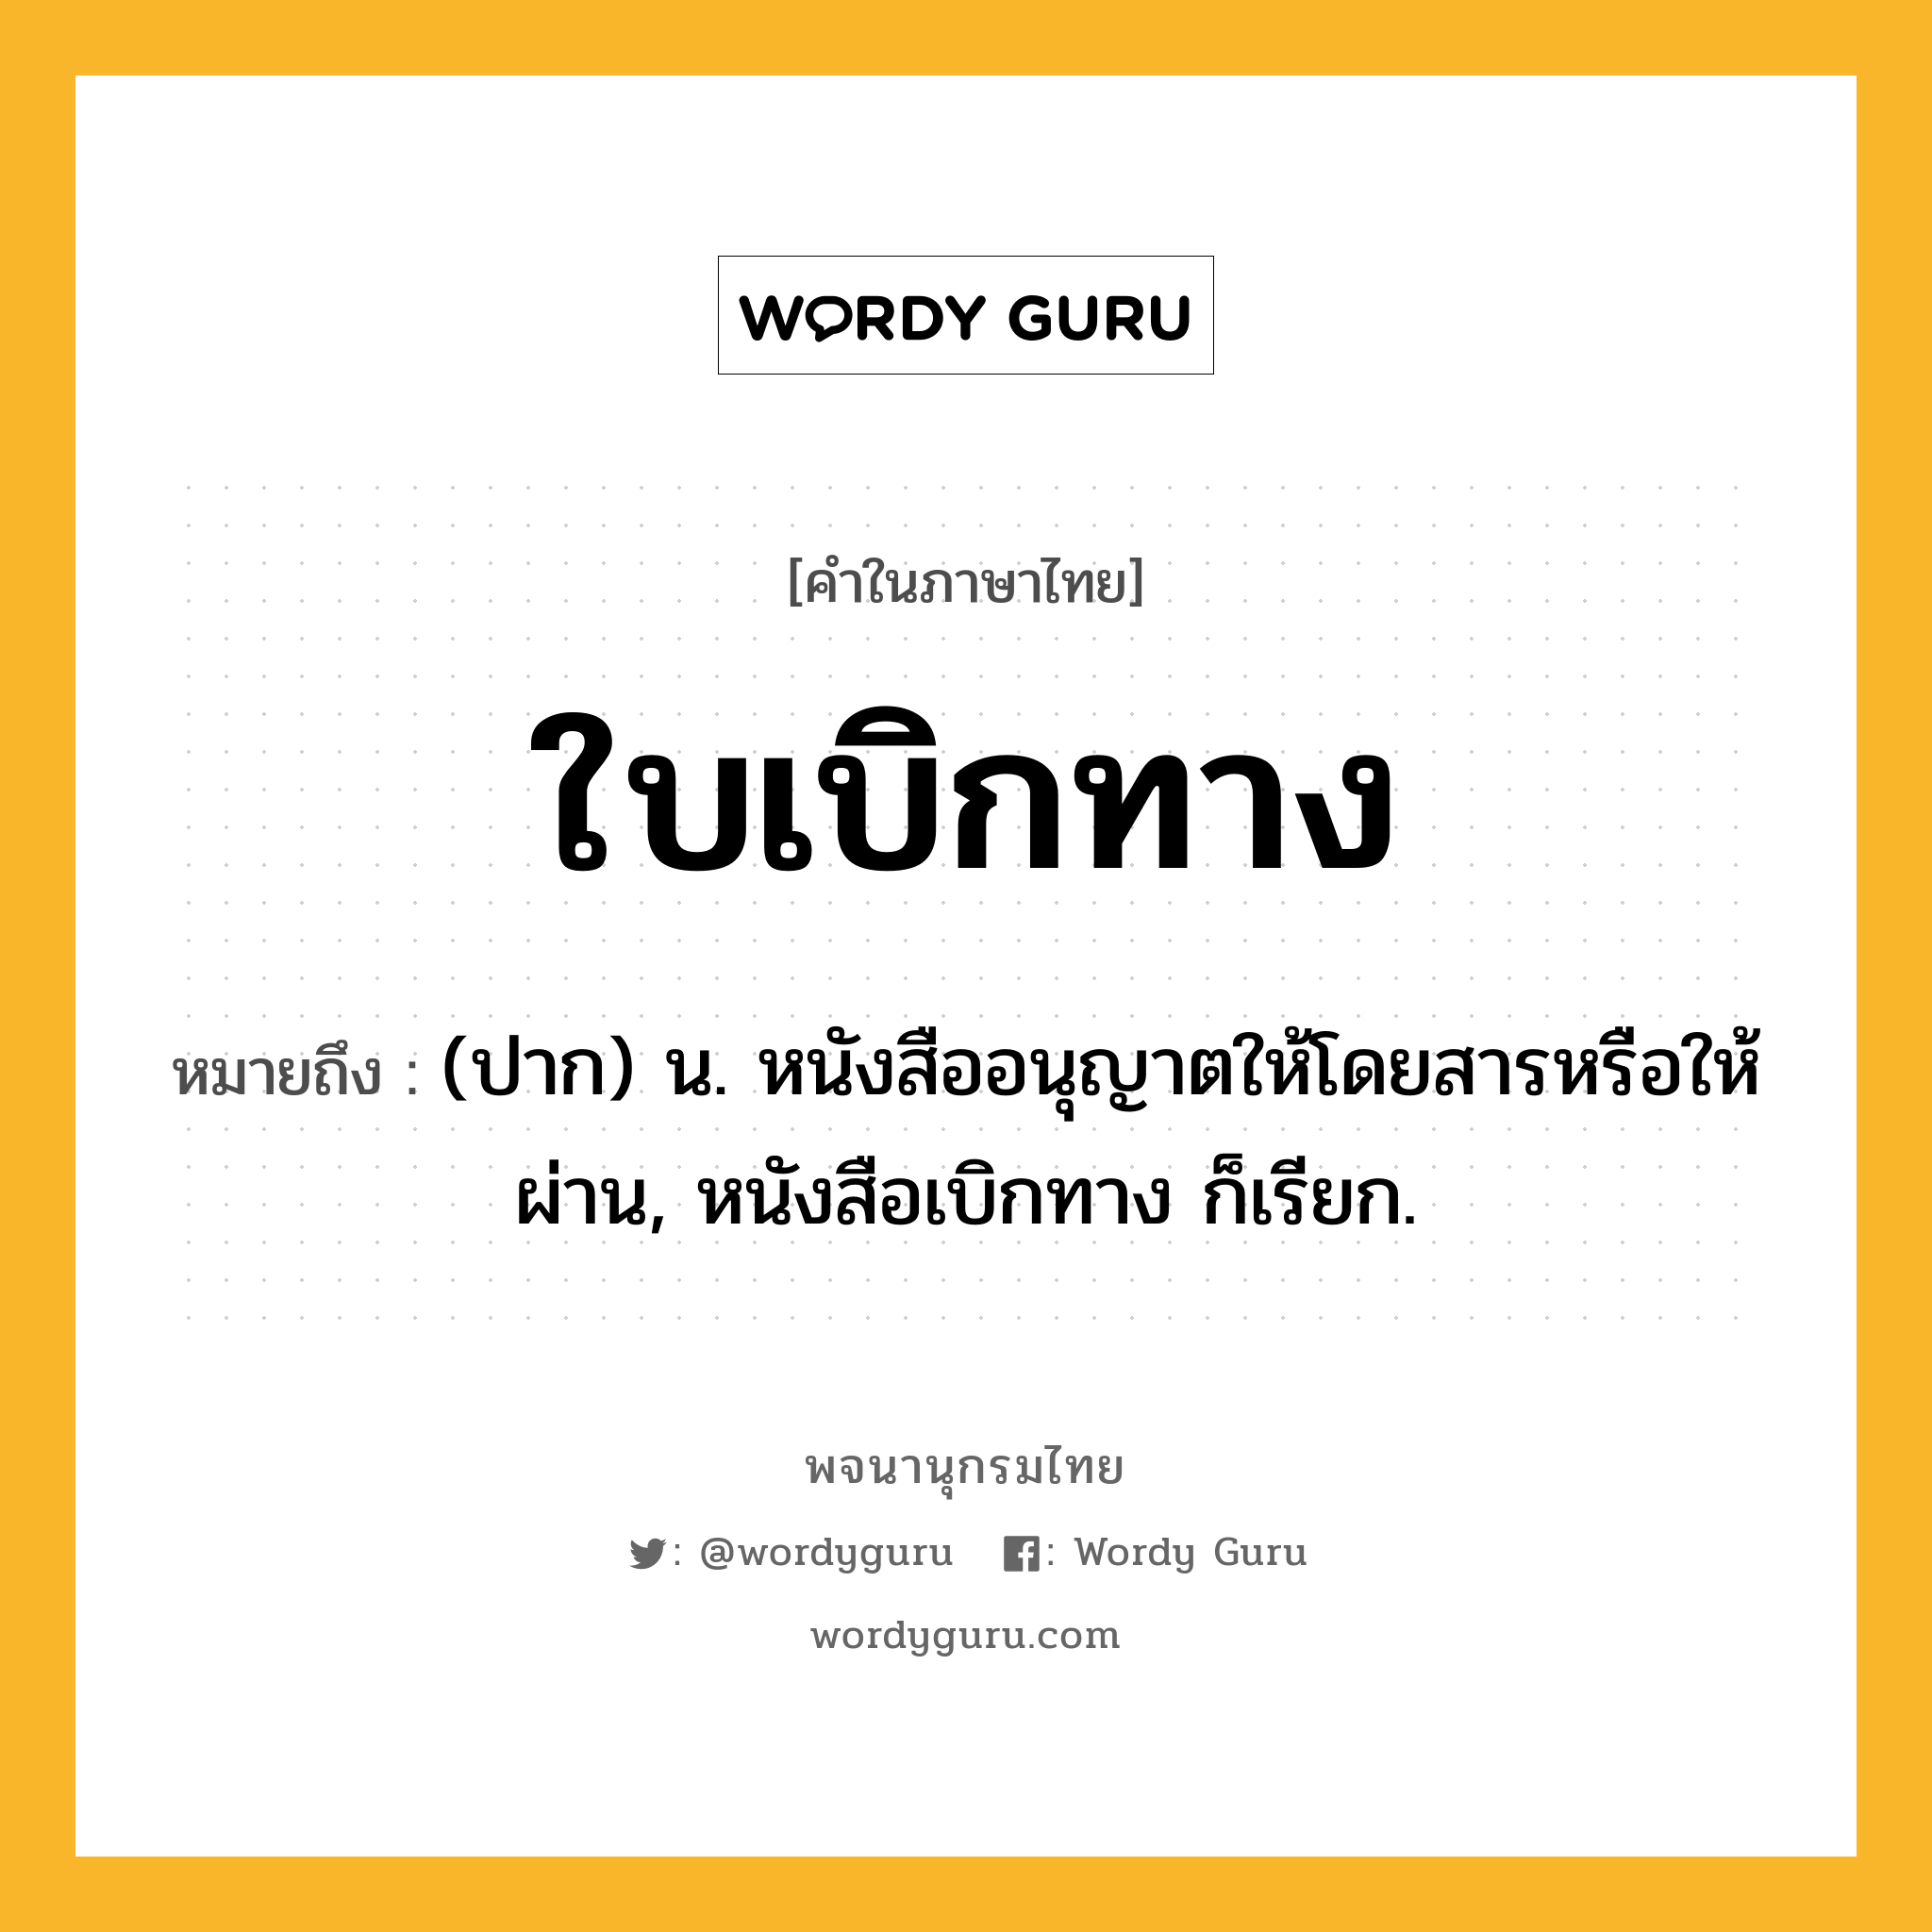 ใบเบิกทาง หมายถึงอะไร?, คำในภาษาไทย ใบเบิกทาง หมายถึง (ปาก) น. หนังสืออนุญาตให้โดยสารหรือให้ผ่าน, หนังสือเบิกทาง ก็เรียก.